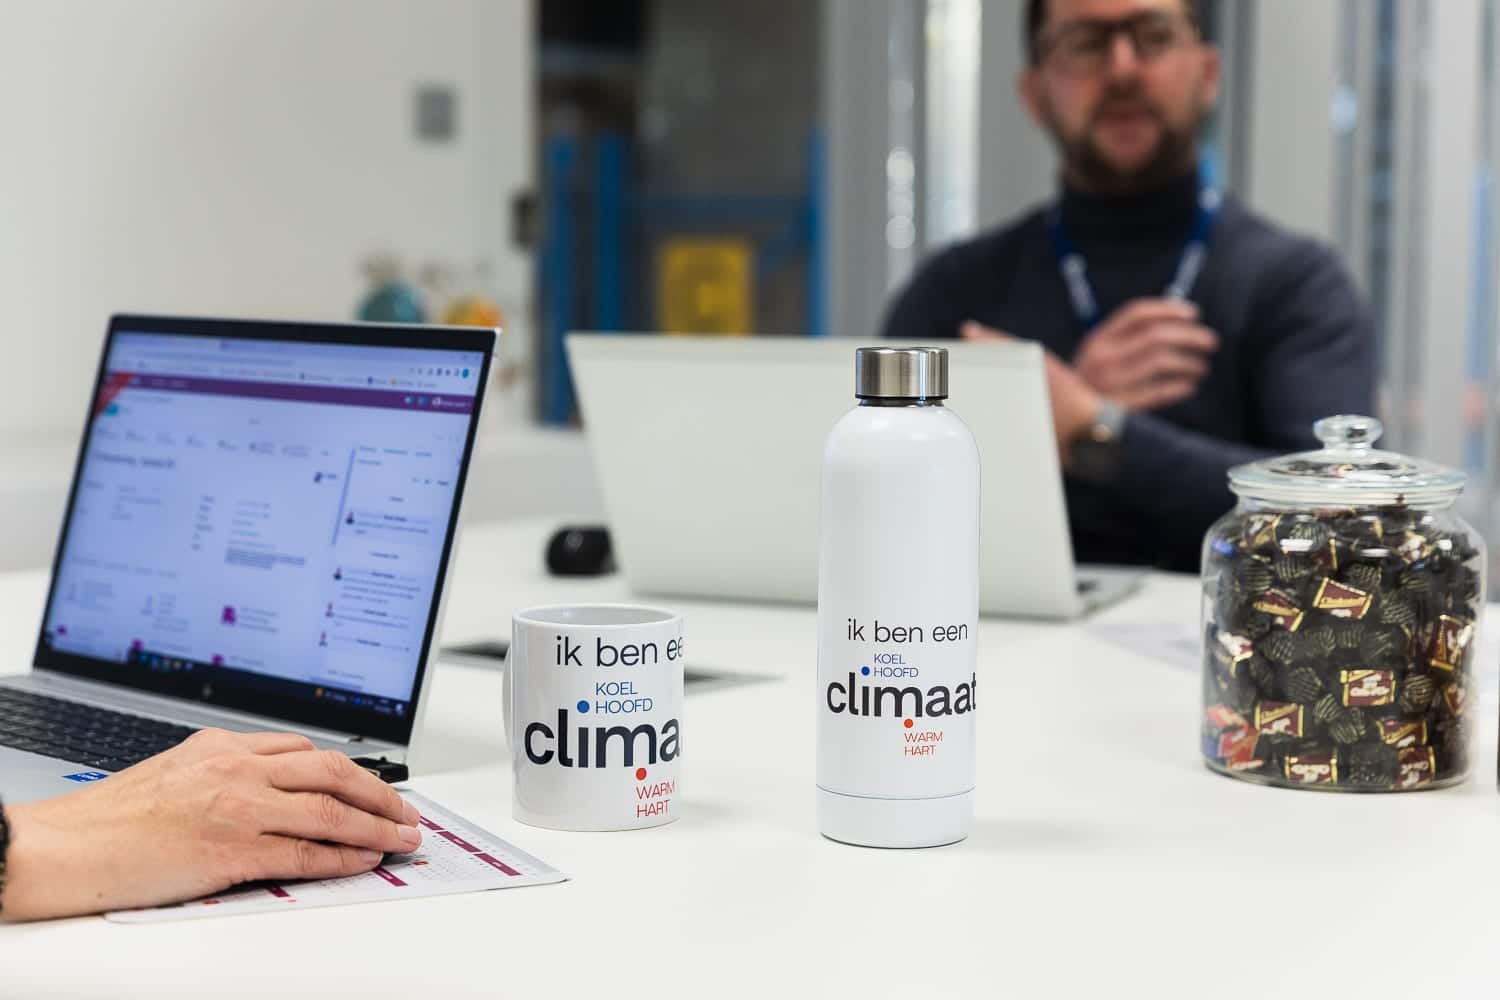 Een meeting is bezig bij Climatrix. Op de tafel staan verschillende laptops, een koffiemok en drinkfles van Climatrix.